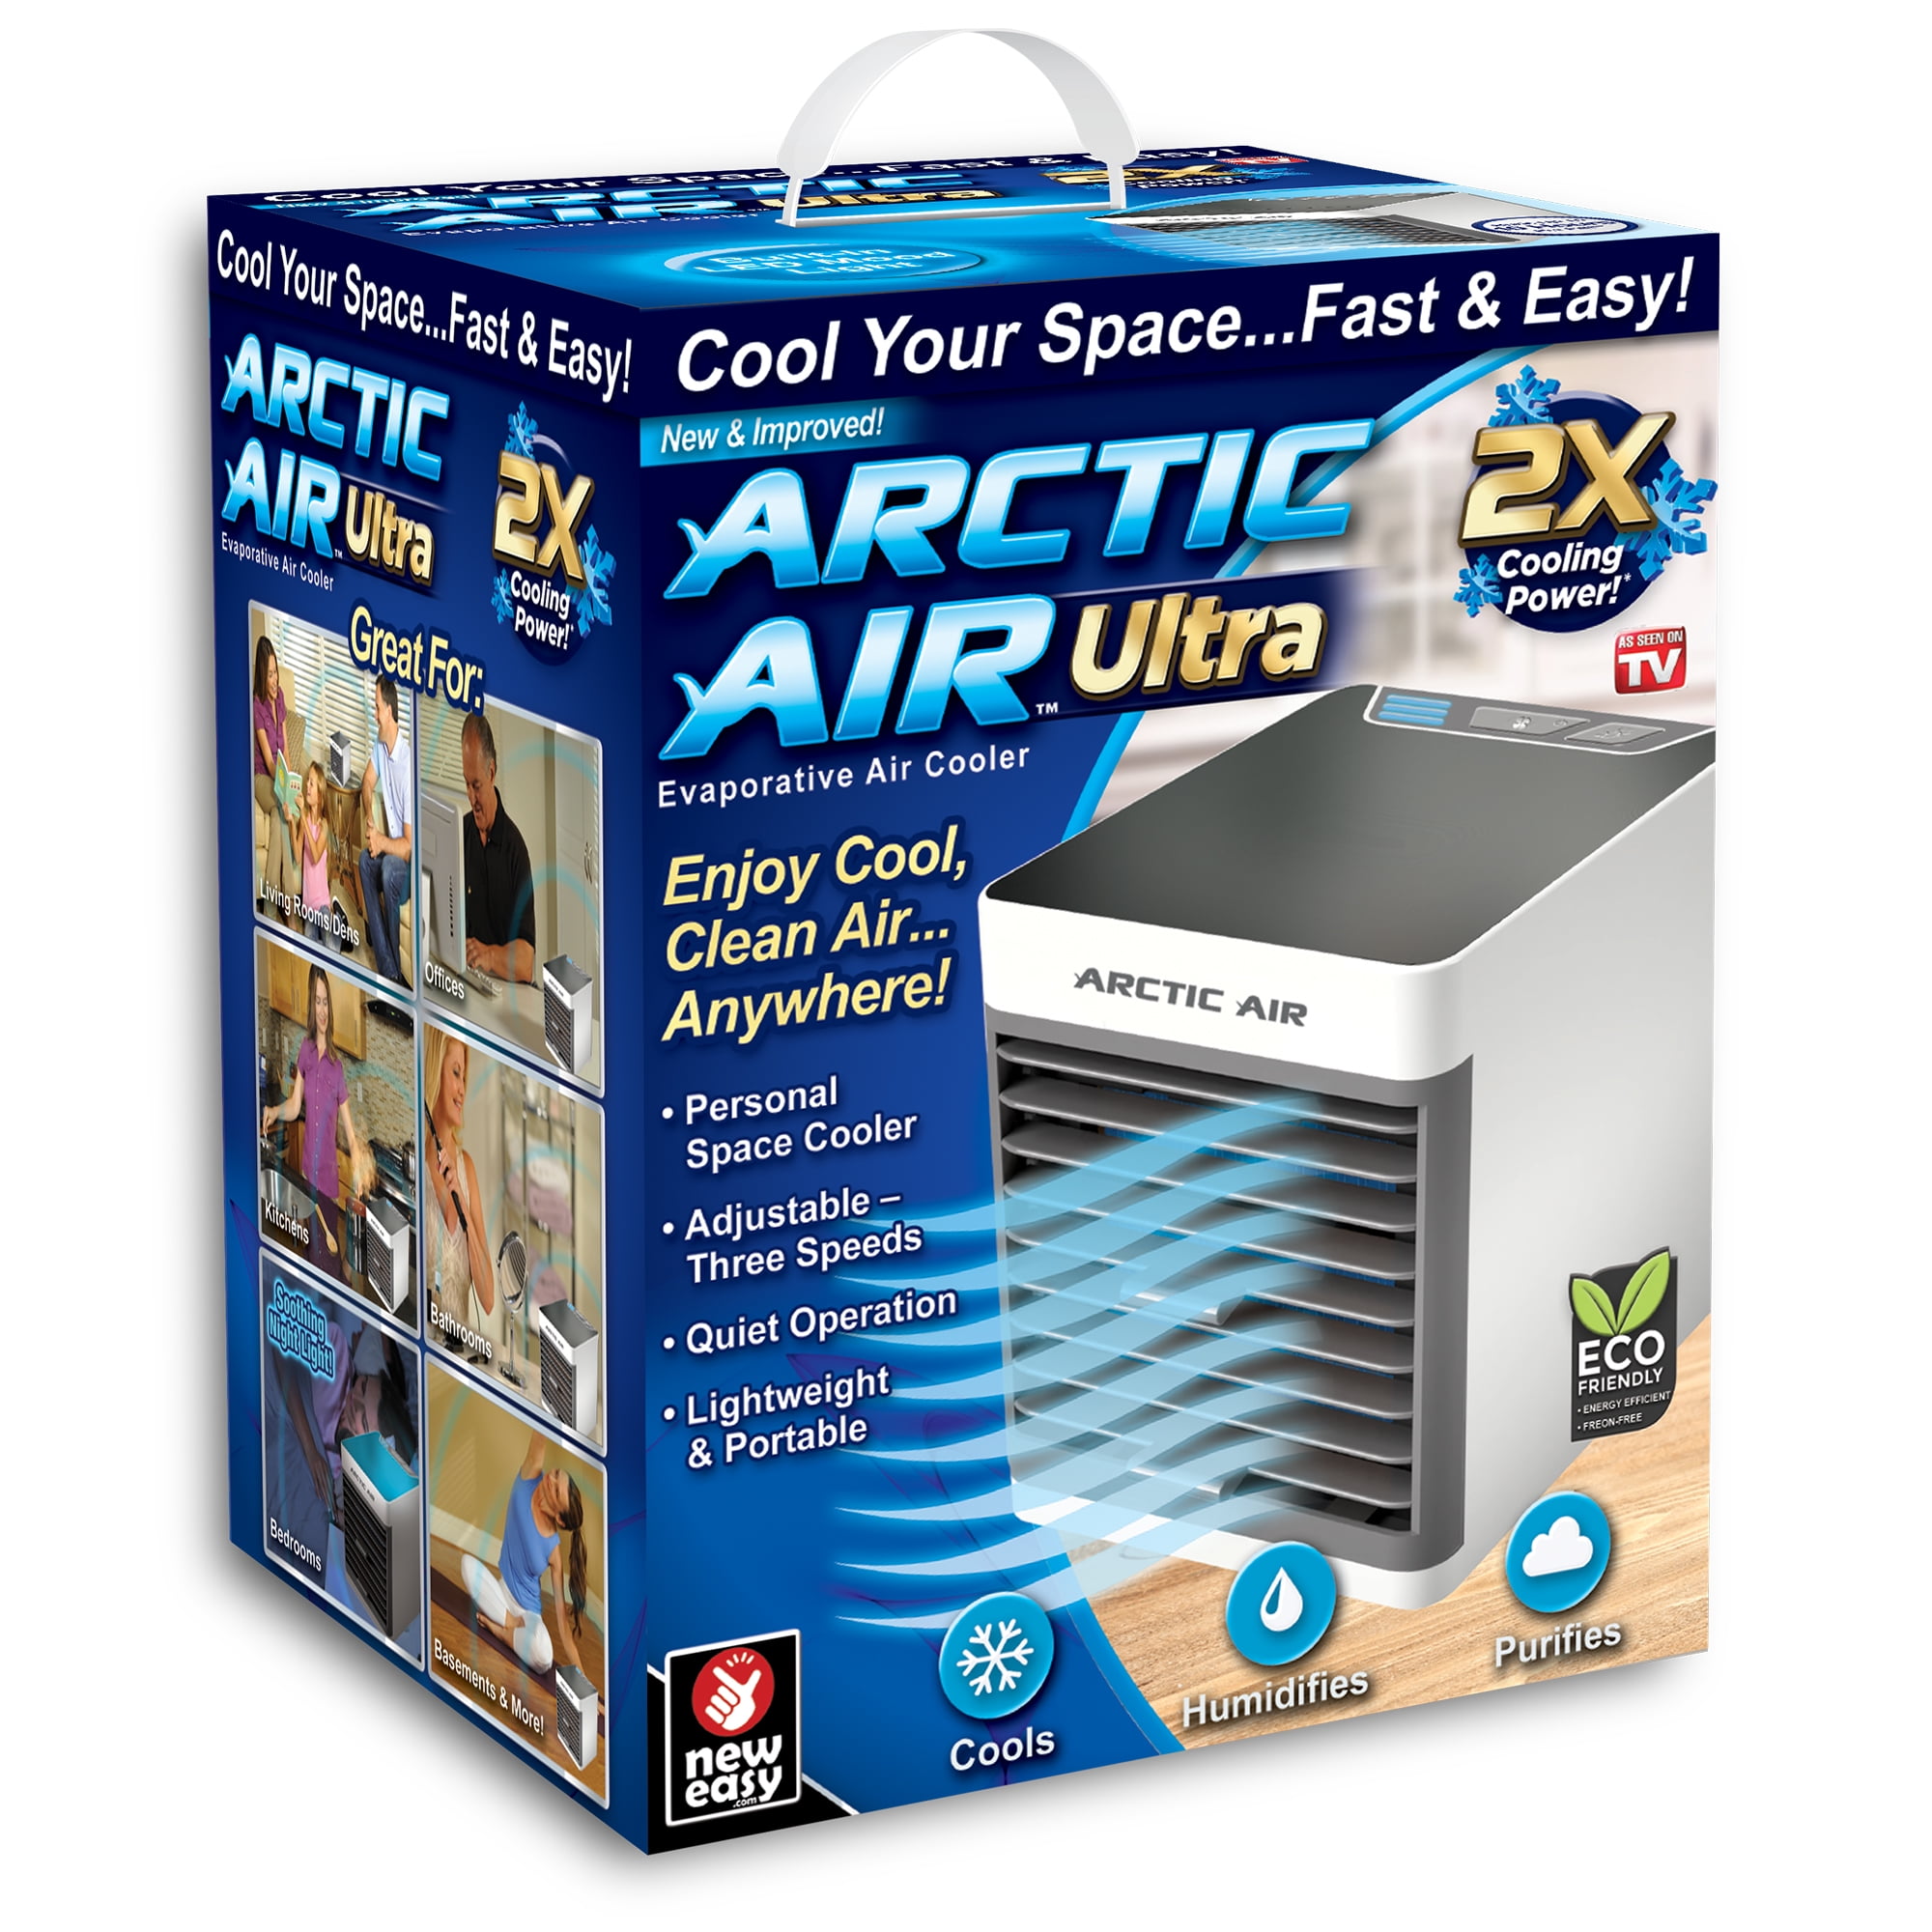 Air Cooler As Seen on TV - Walmart.com 